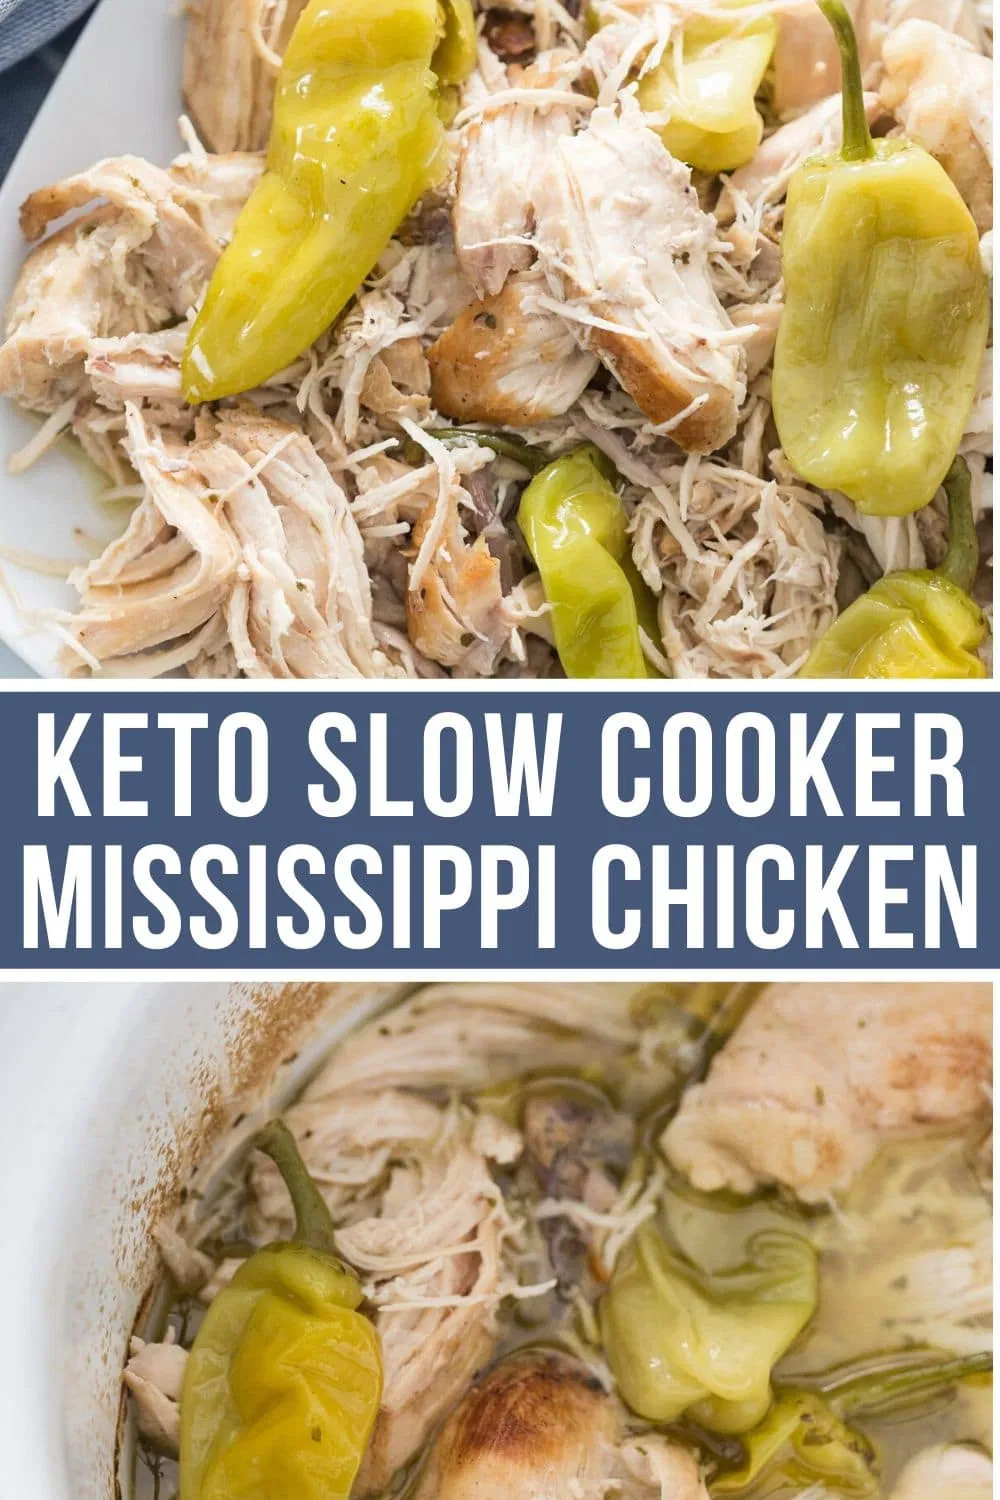 Mississippi Chicken Slow Cooker Keto
 Tender Slow Cooker Mississippi Chicken Keto & Low Carb